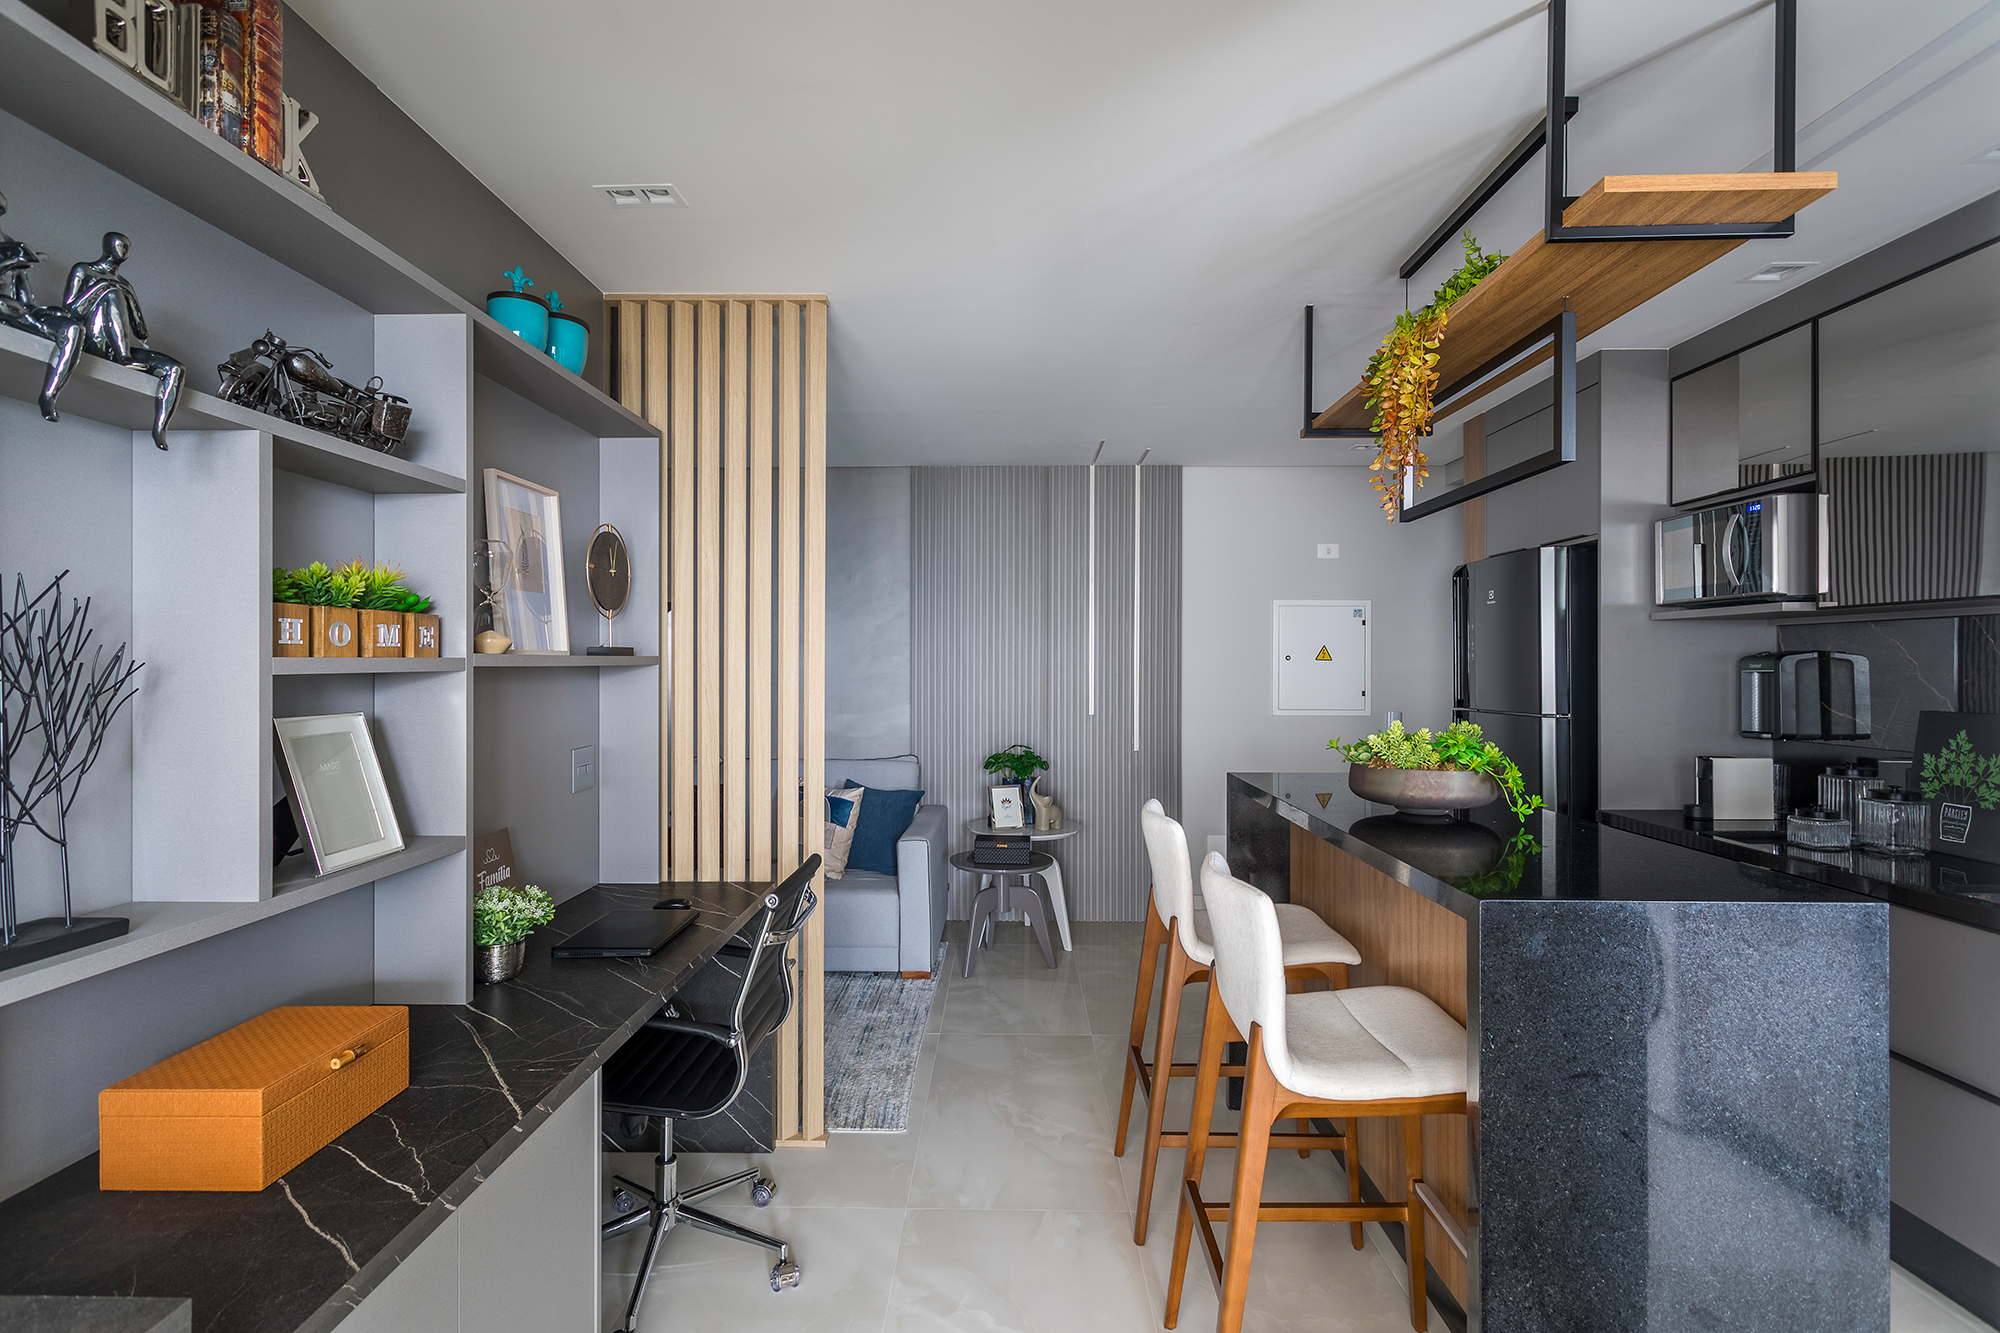  Appartamento di 82 m² con giardino verticale nel corridoio e cucina con isola